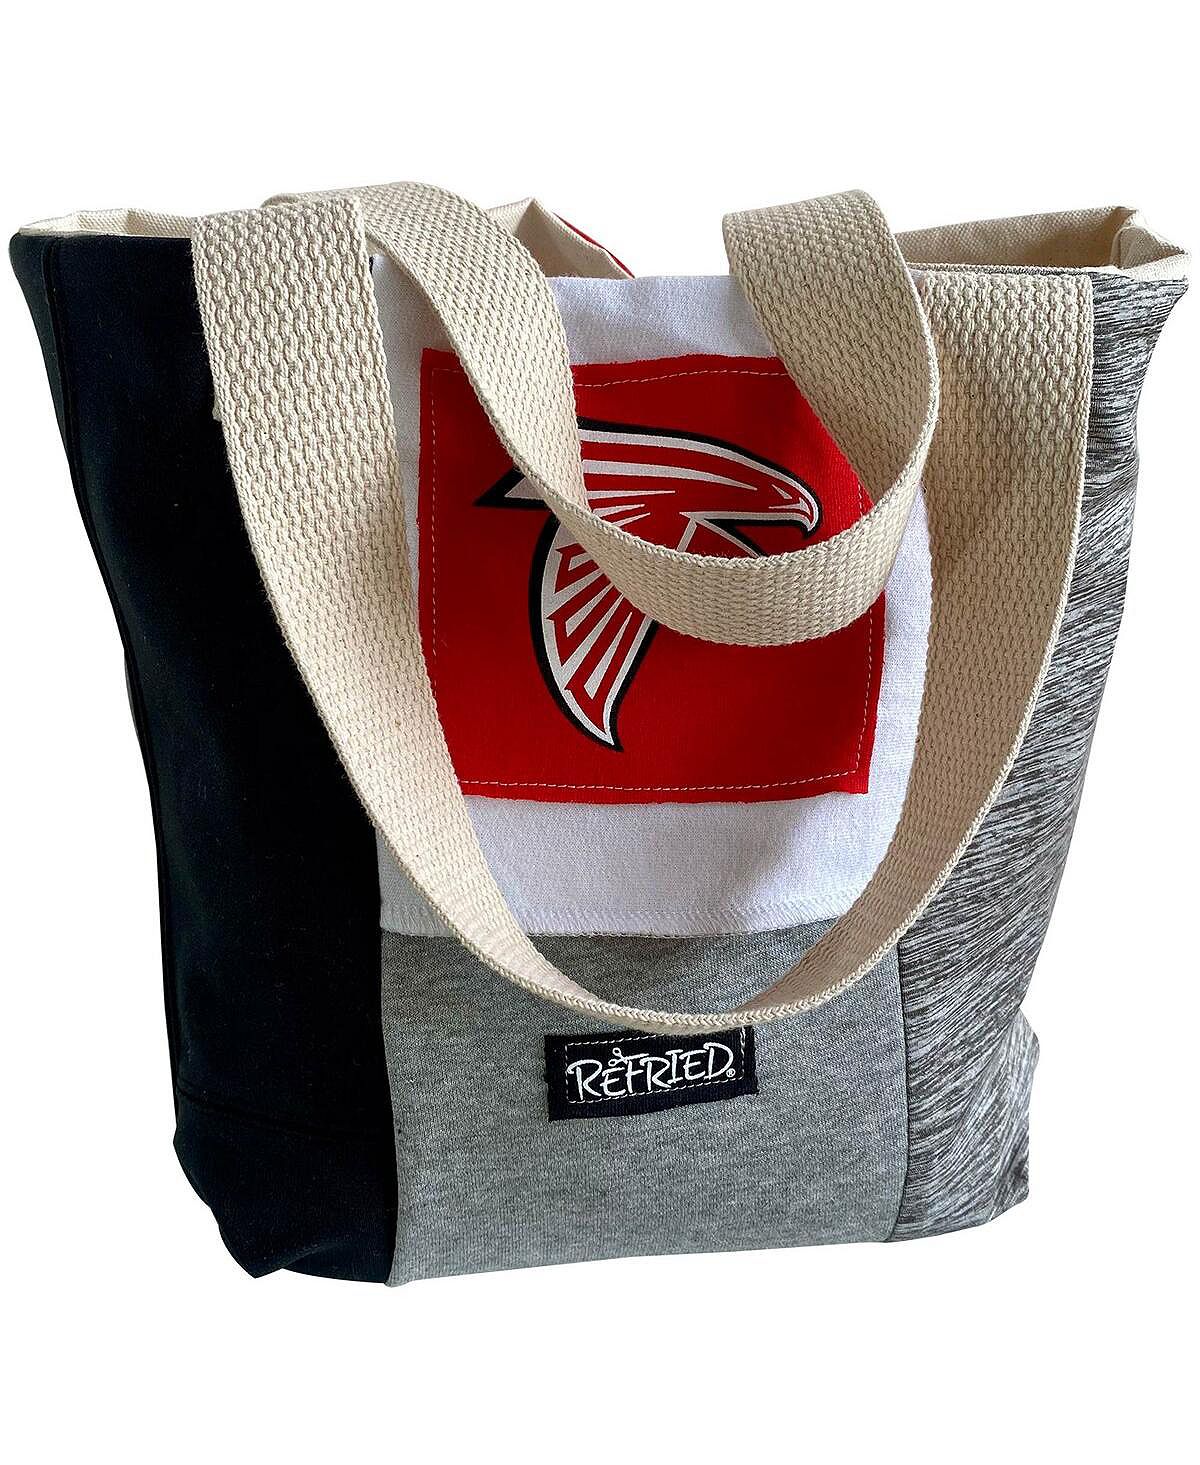 Женская большая сумка Atlanta Falcons из переработанного материала Refried Apparel